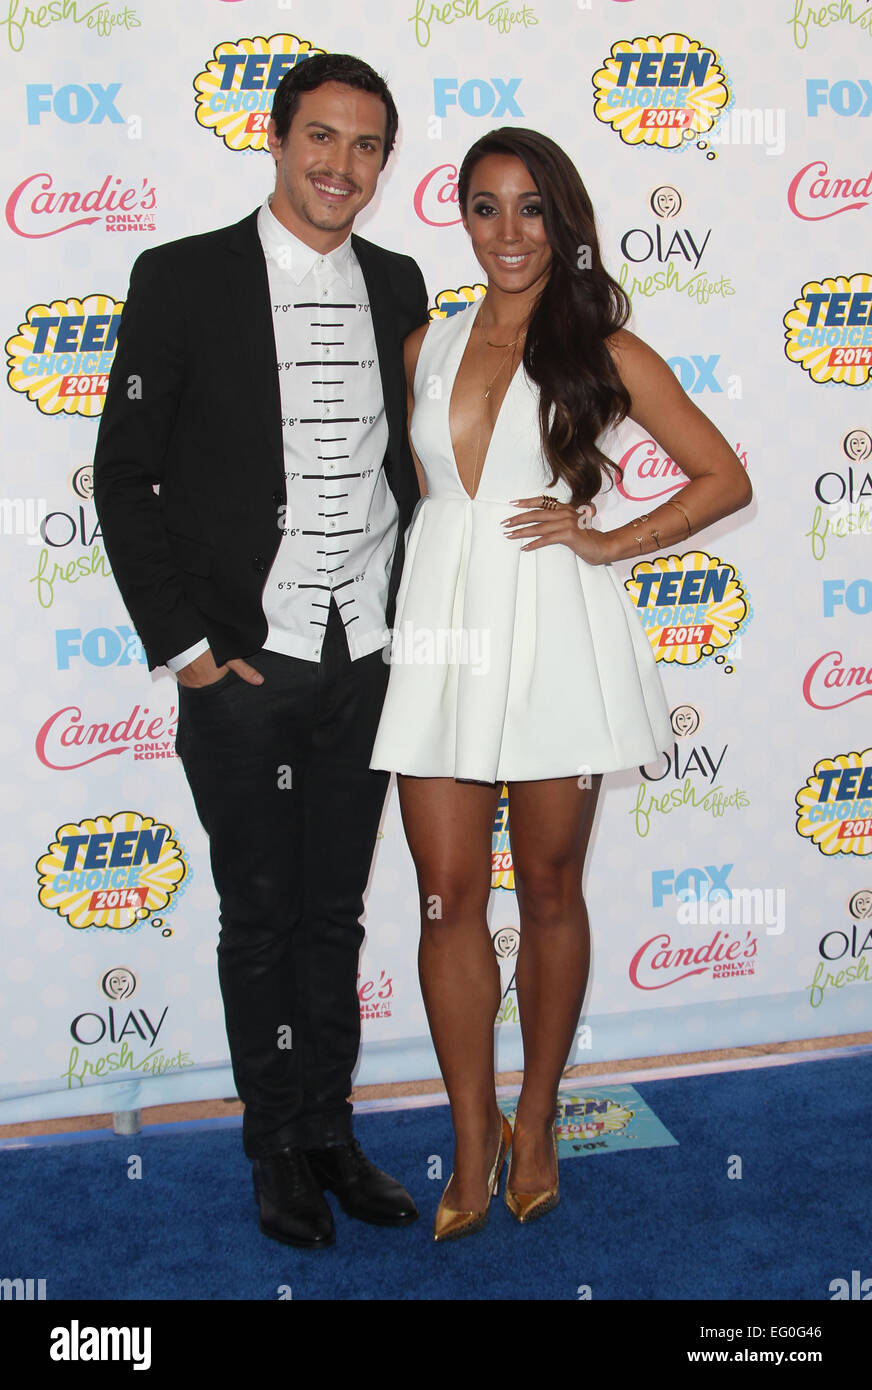 Teen Choice Awards 2014 Mit Alex Kinsey Sierra Deaton Alex Sierra Wo Los Angeles California Vereinigte Staaten Von Amerika Bei 10 August 2014 Stockfotografie Alamy